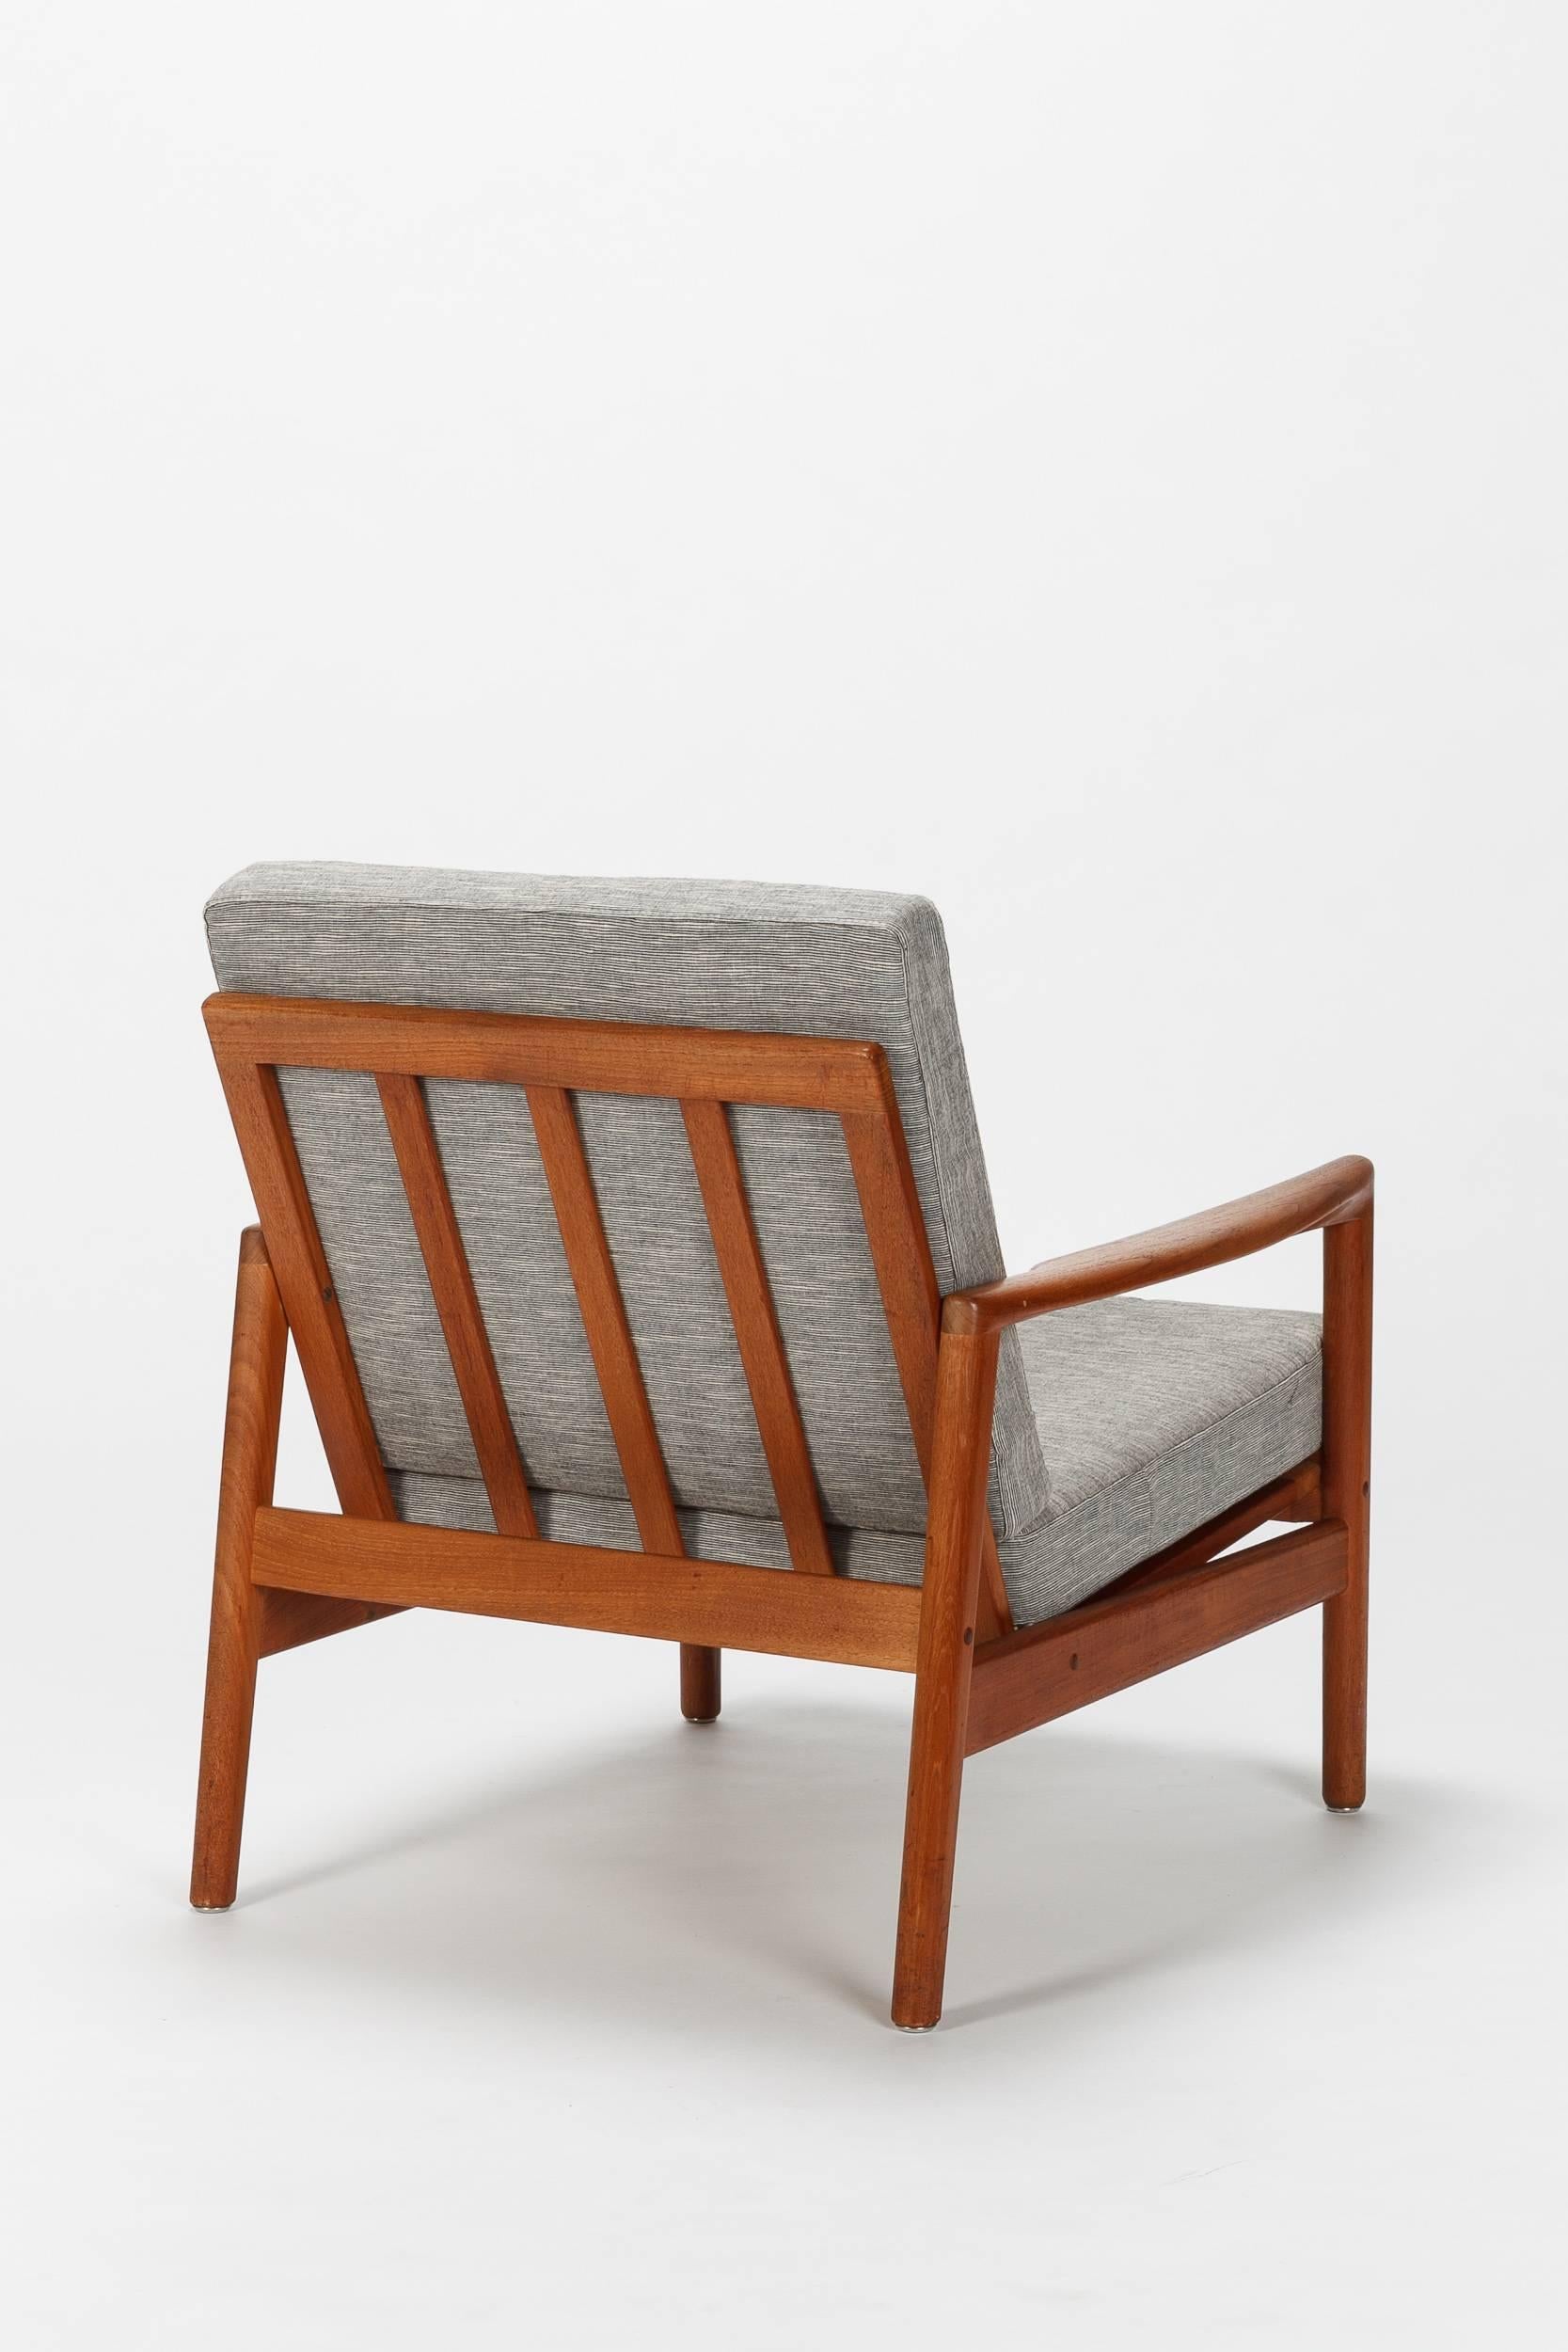 Scandinavian Modern Danish Pair of Hans Olsen Chairs Juul Kristensen Teak, 1950s For Sale